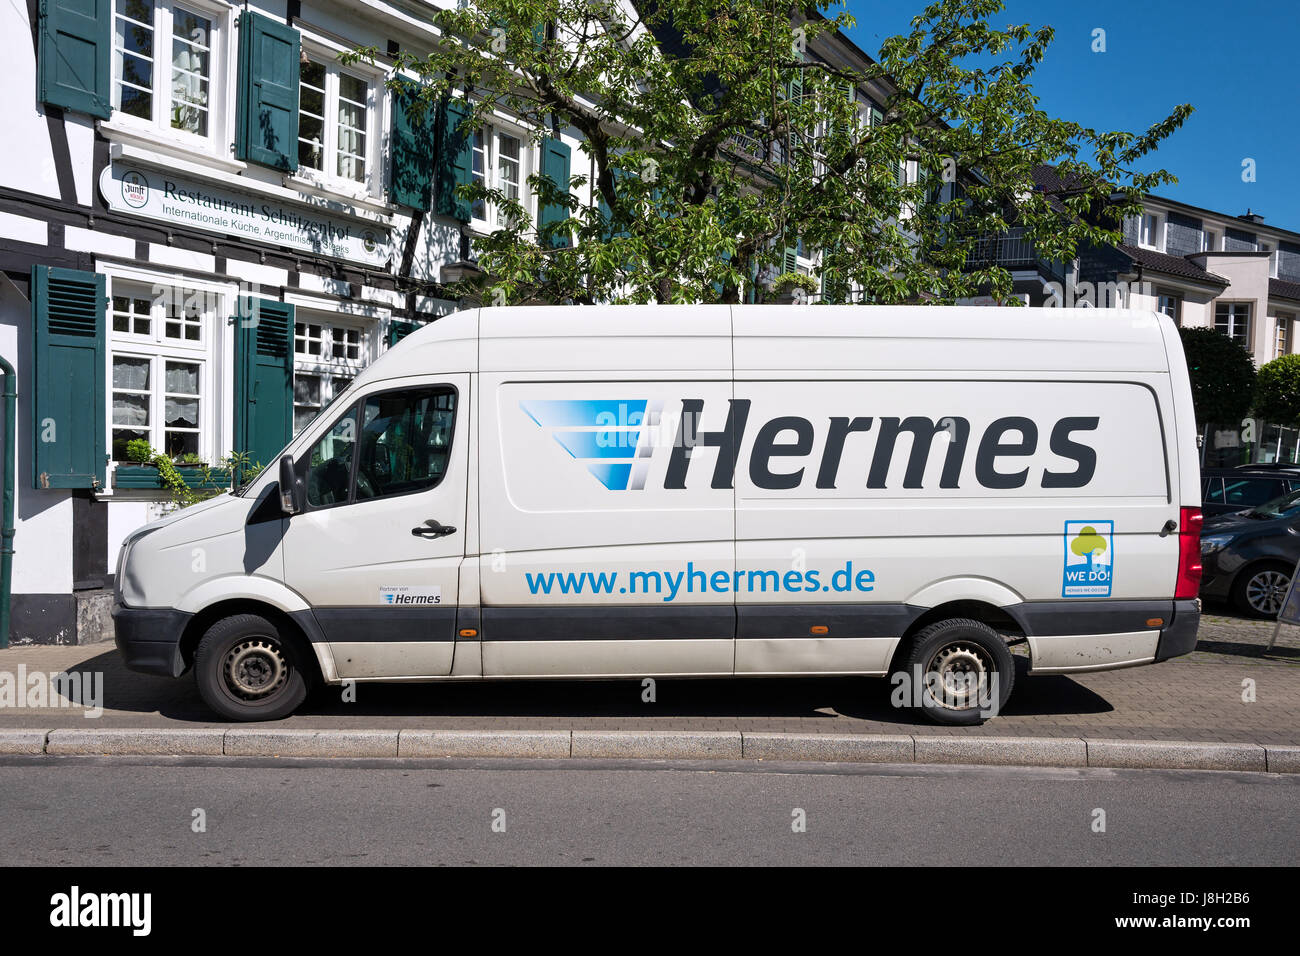 my hermes van